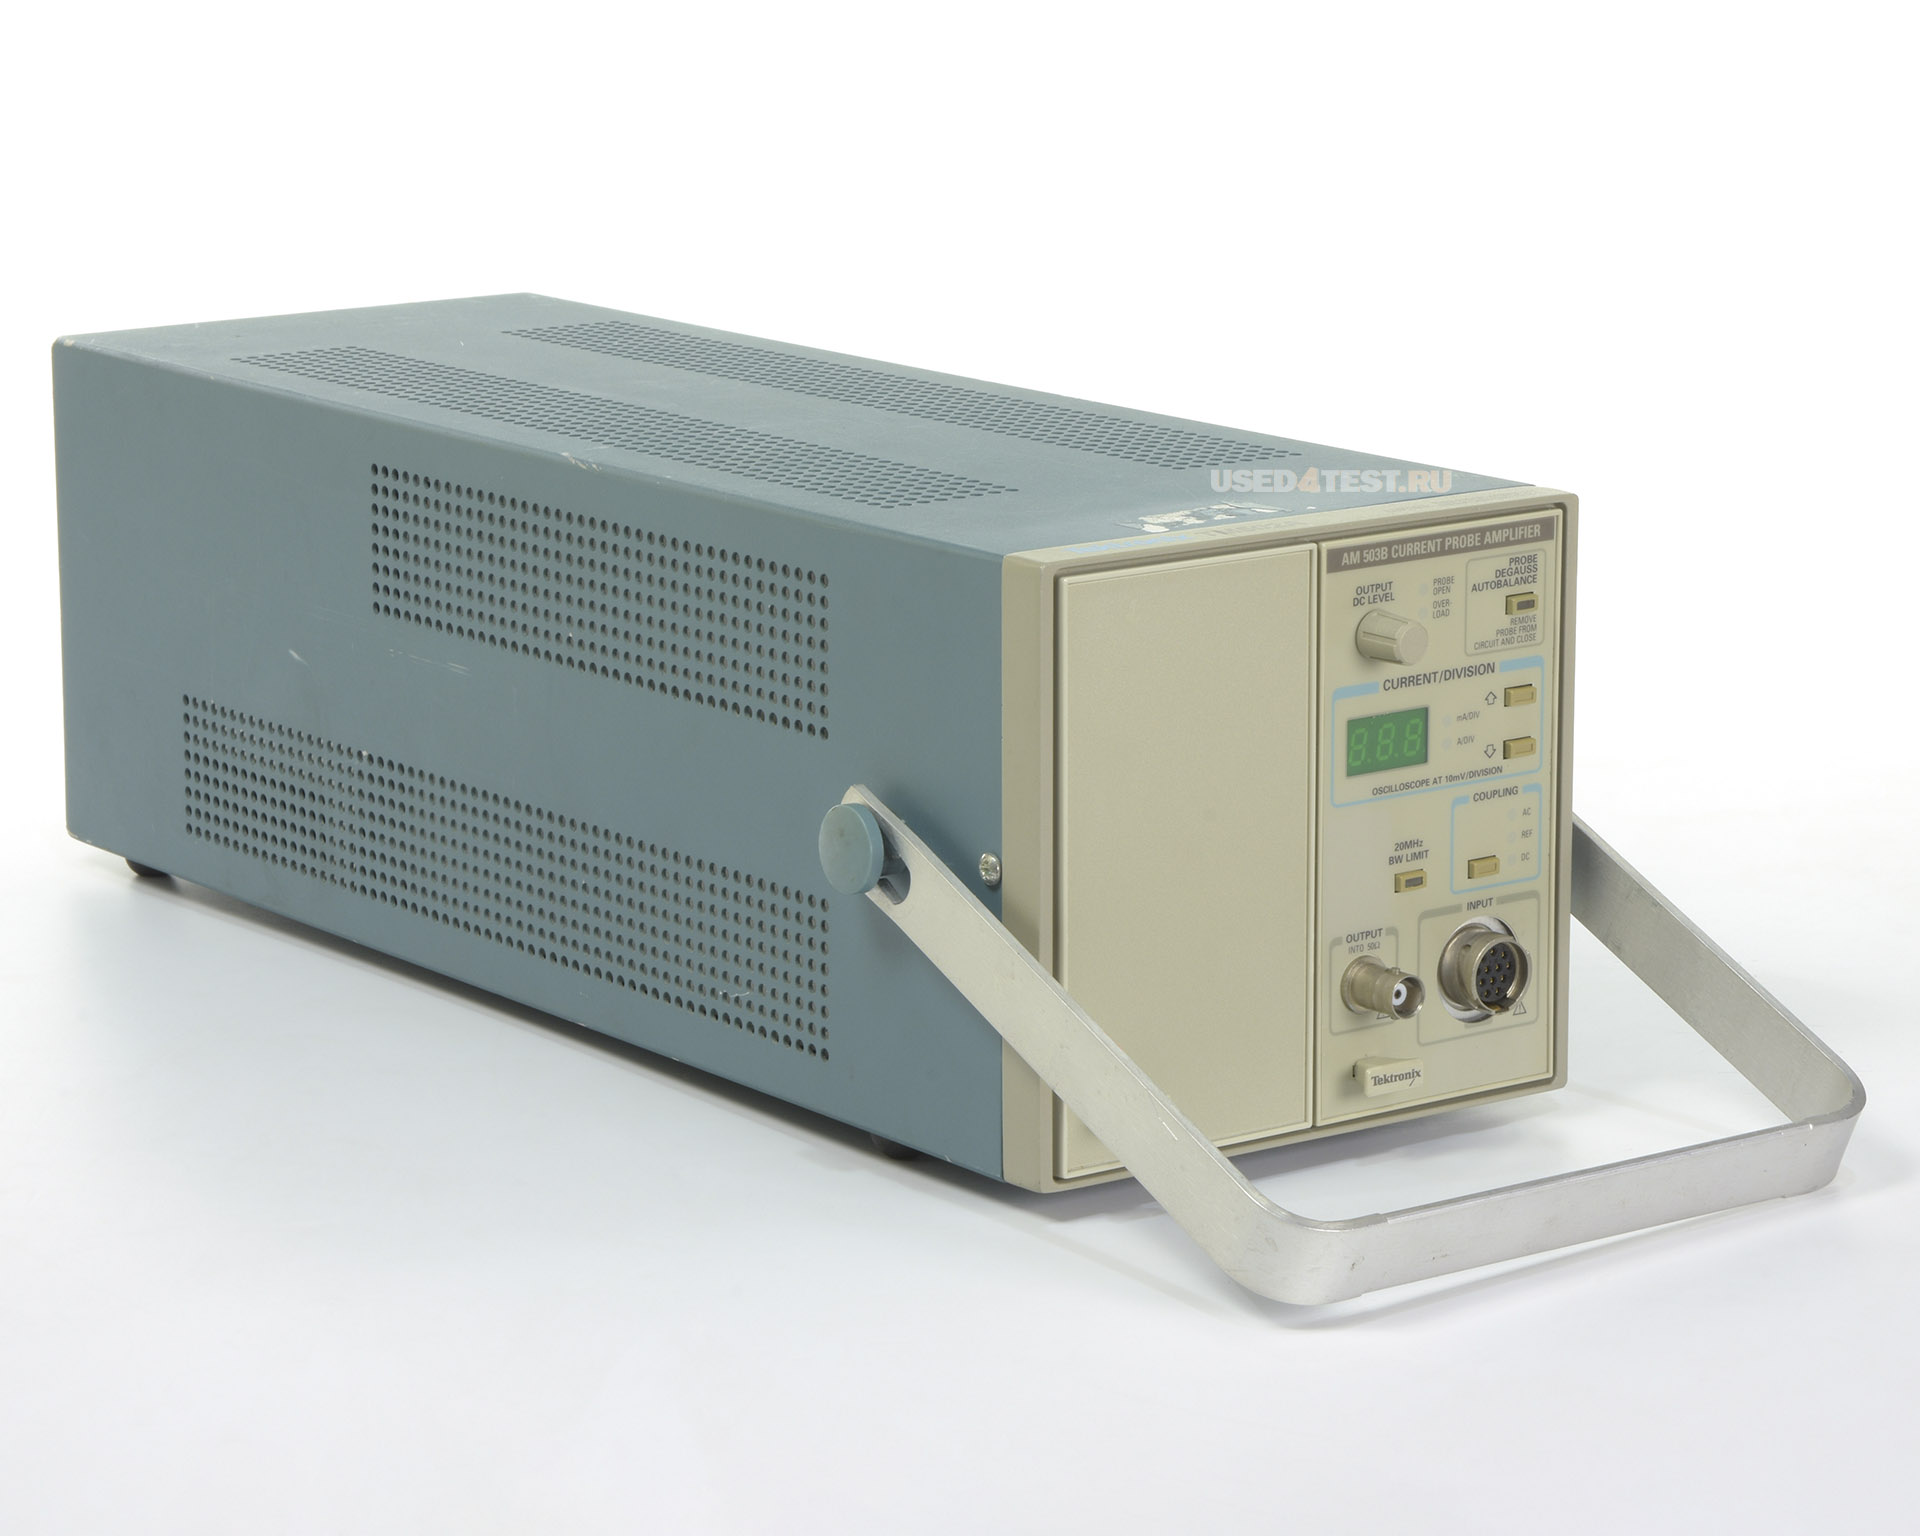 Система измерения токовых пробниковTektronix AM503S: AM 503B, A6302, TM 502A
 Стоимость указана в Рублях DDP Москва по безналичному расчету включая НДС 20%

